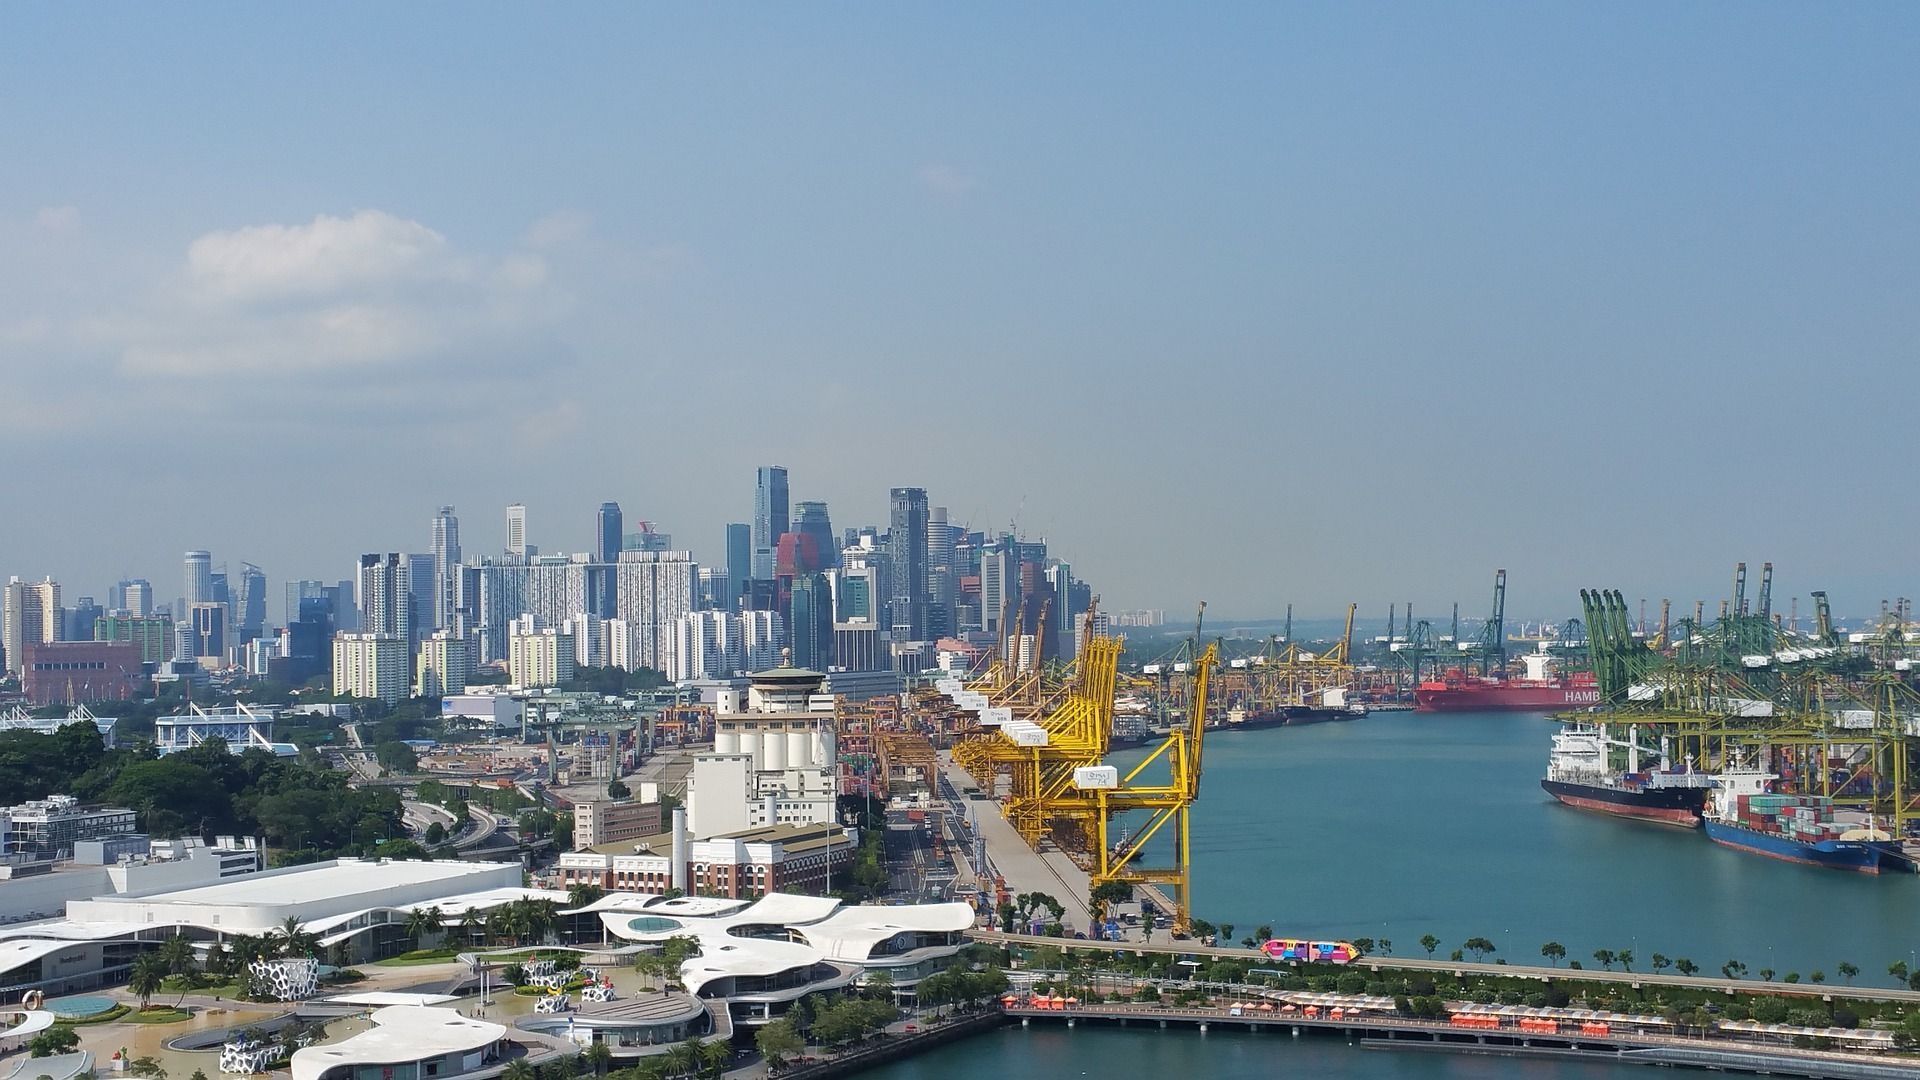 Le port de Singapour est le deuxième plus grand port au monde.